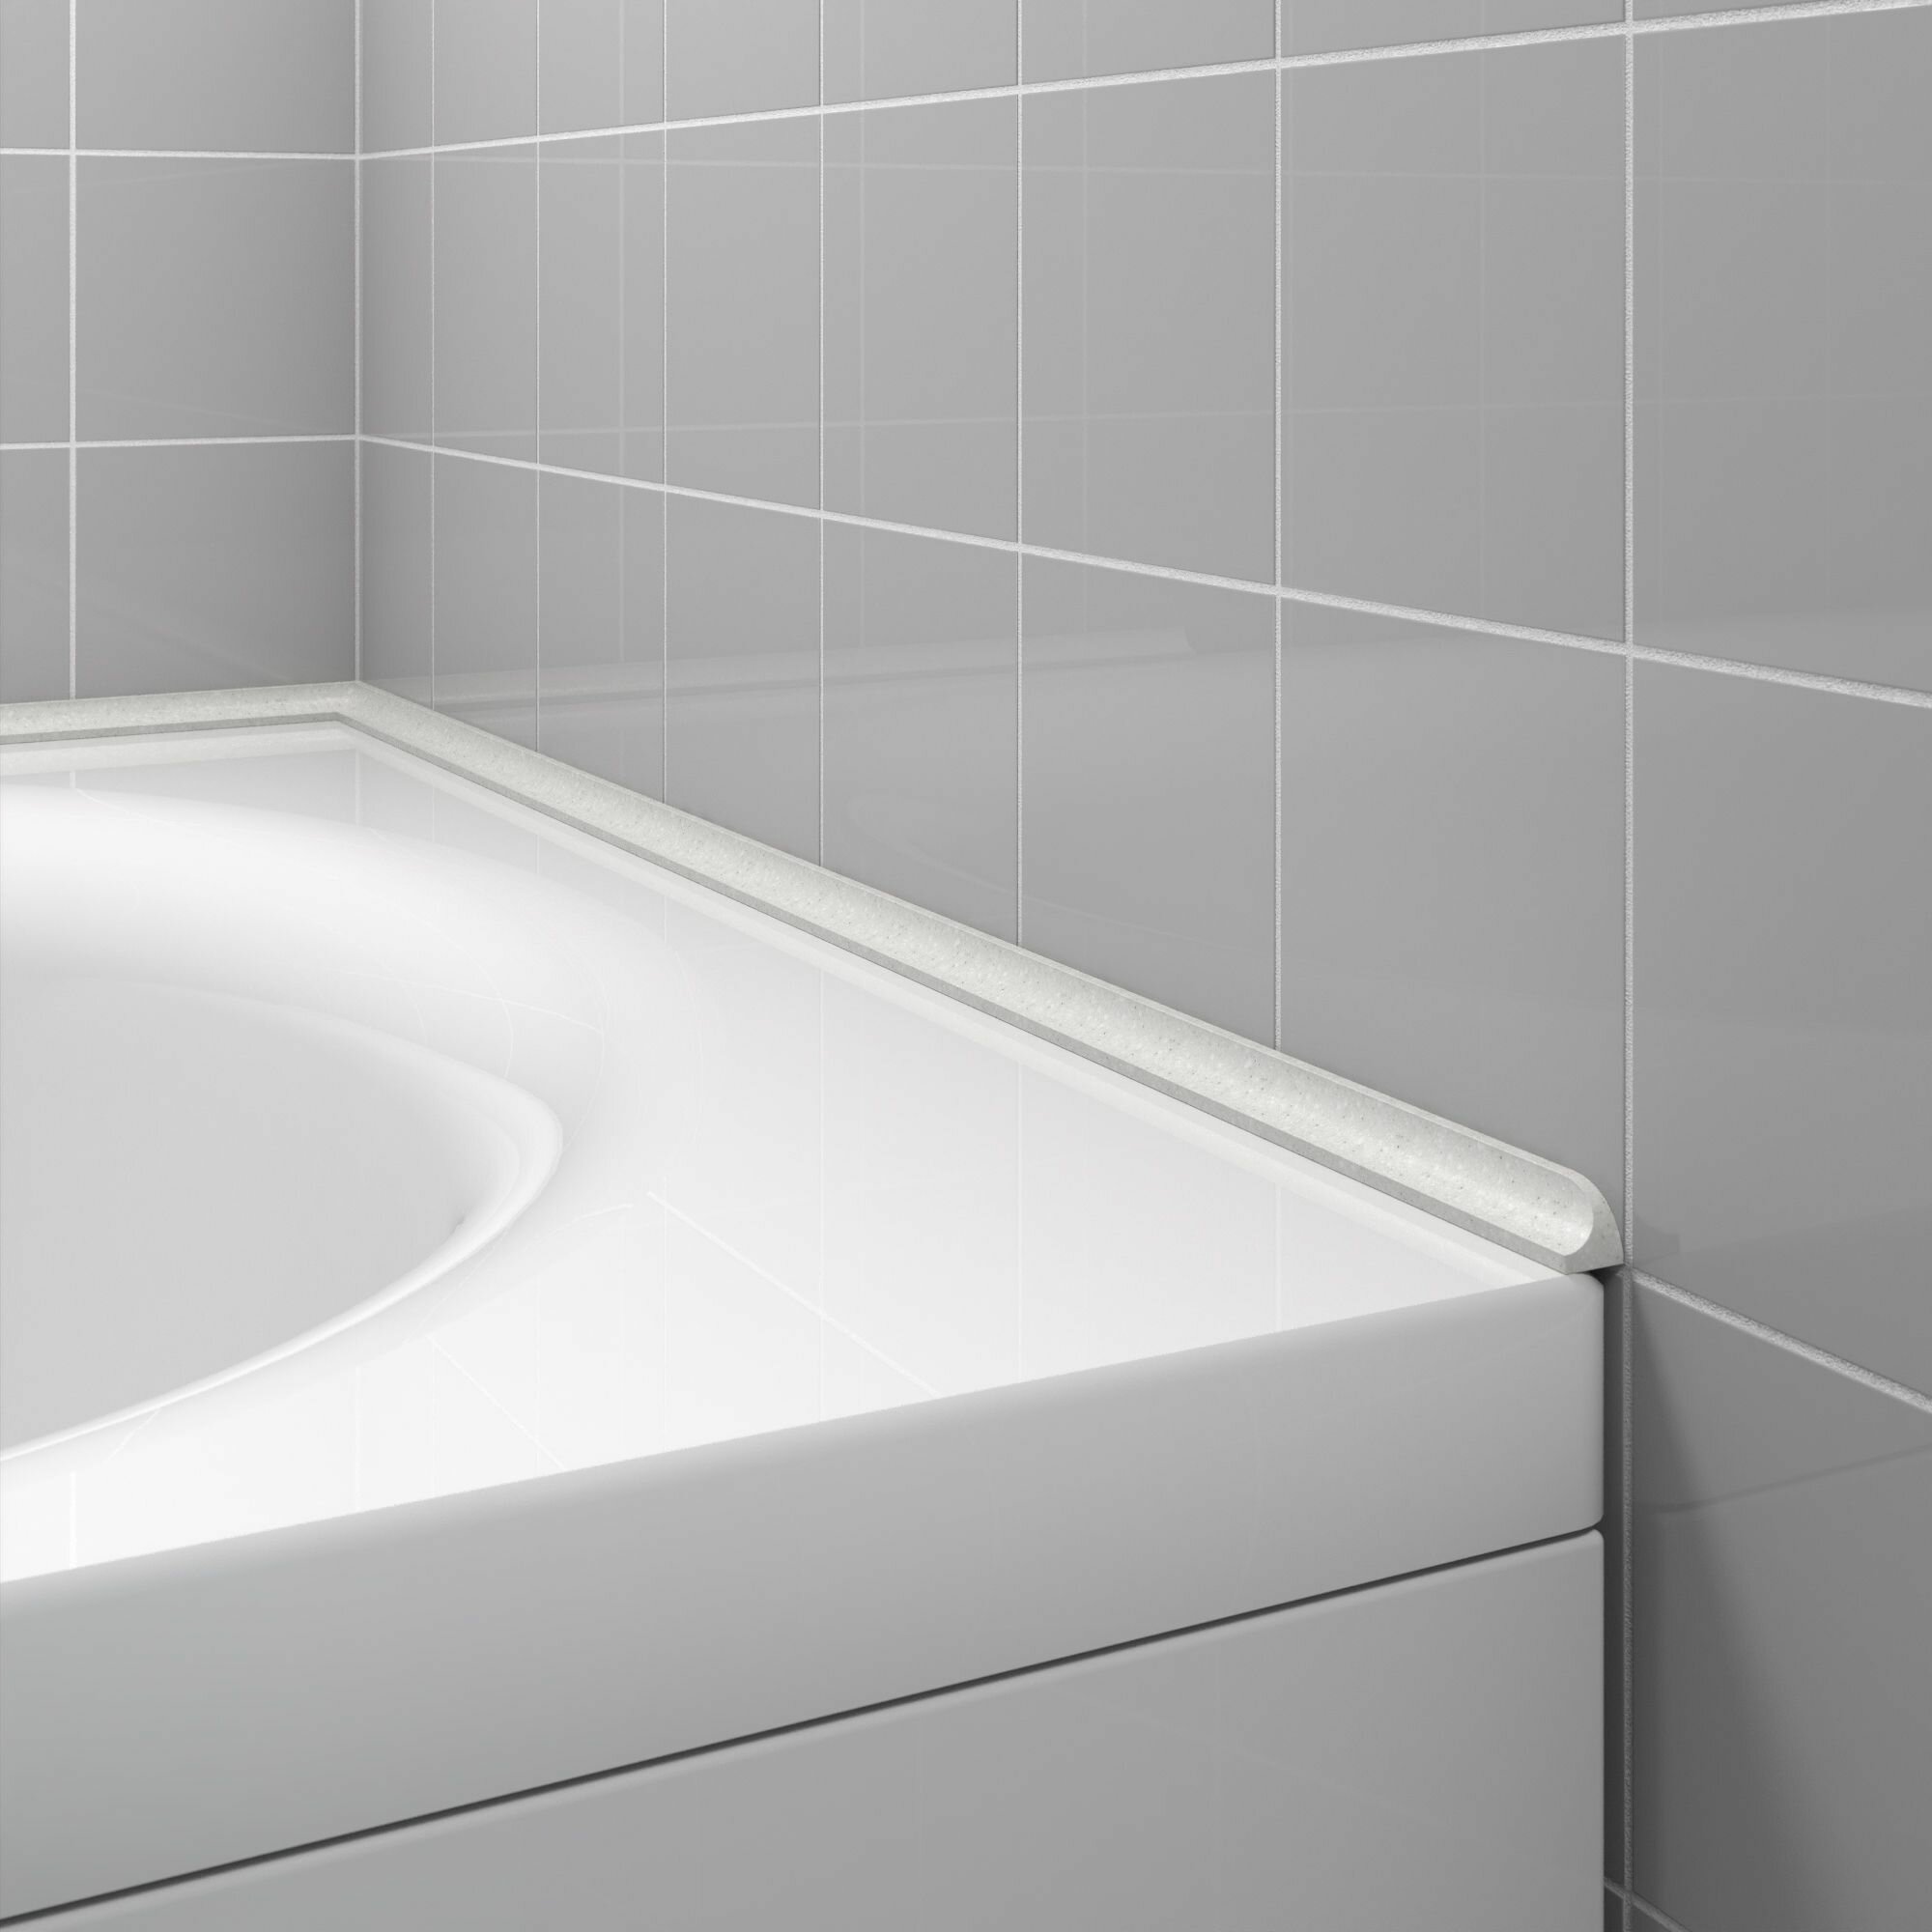 Акриловый плинтус бордюр для ванной BNV ГЛ12 75 сантиметров правая сторона серый цвет глянцевая поверхность